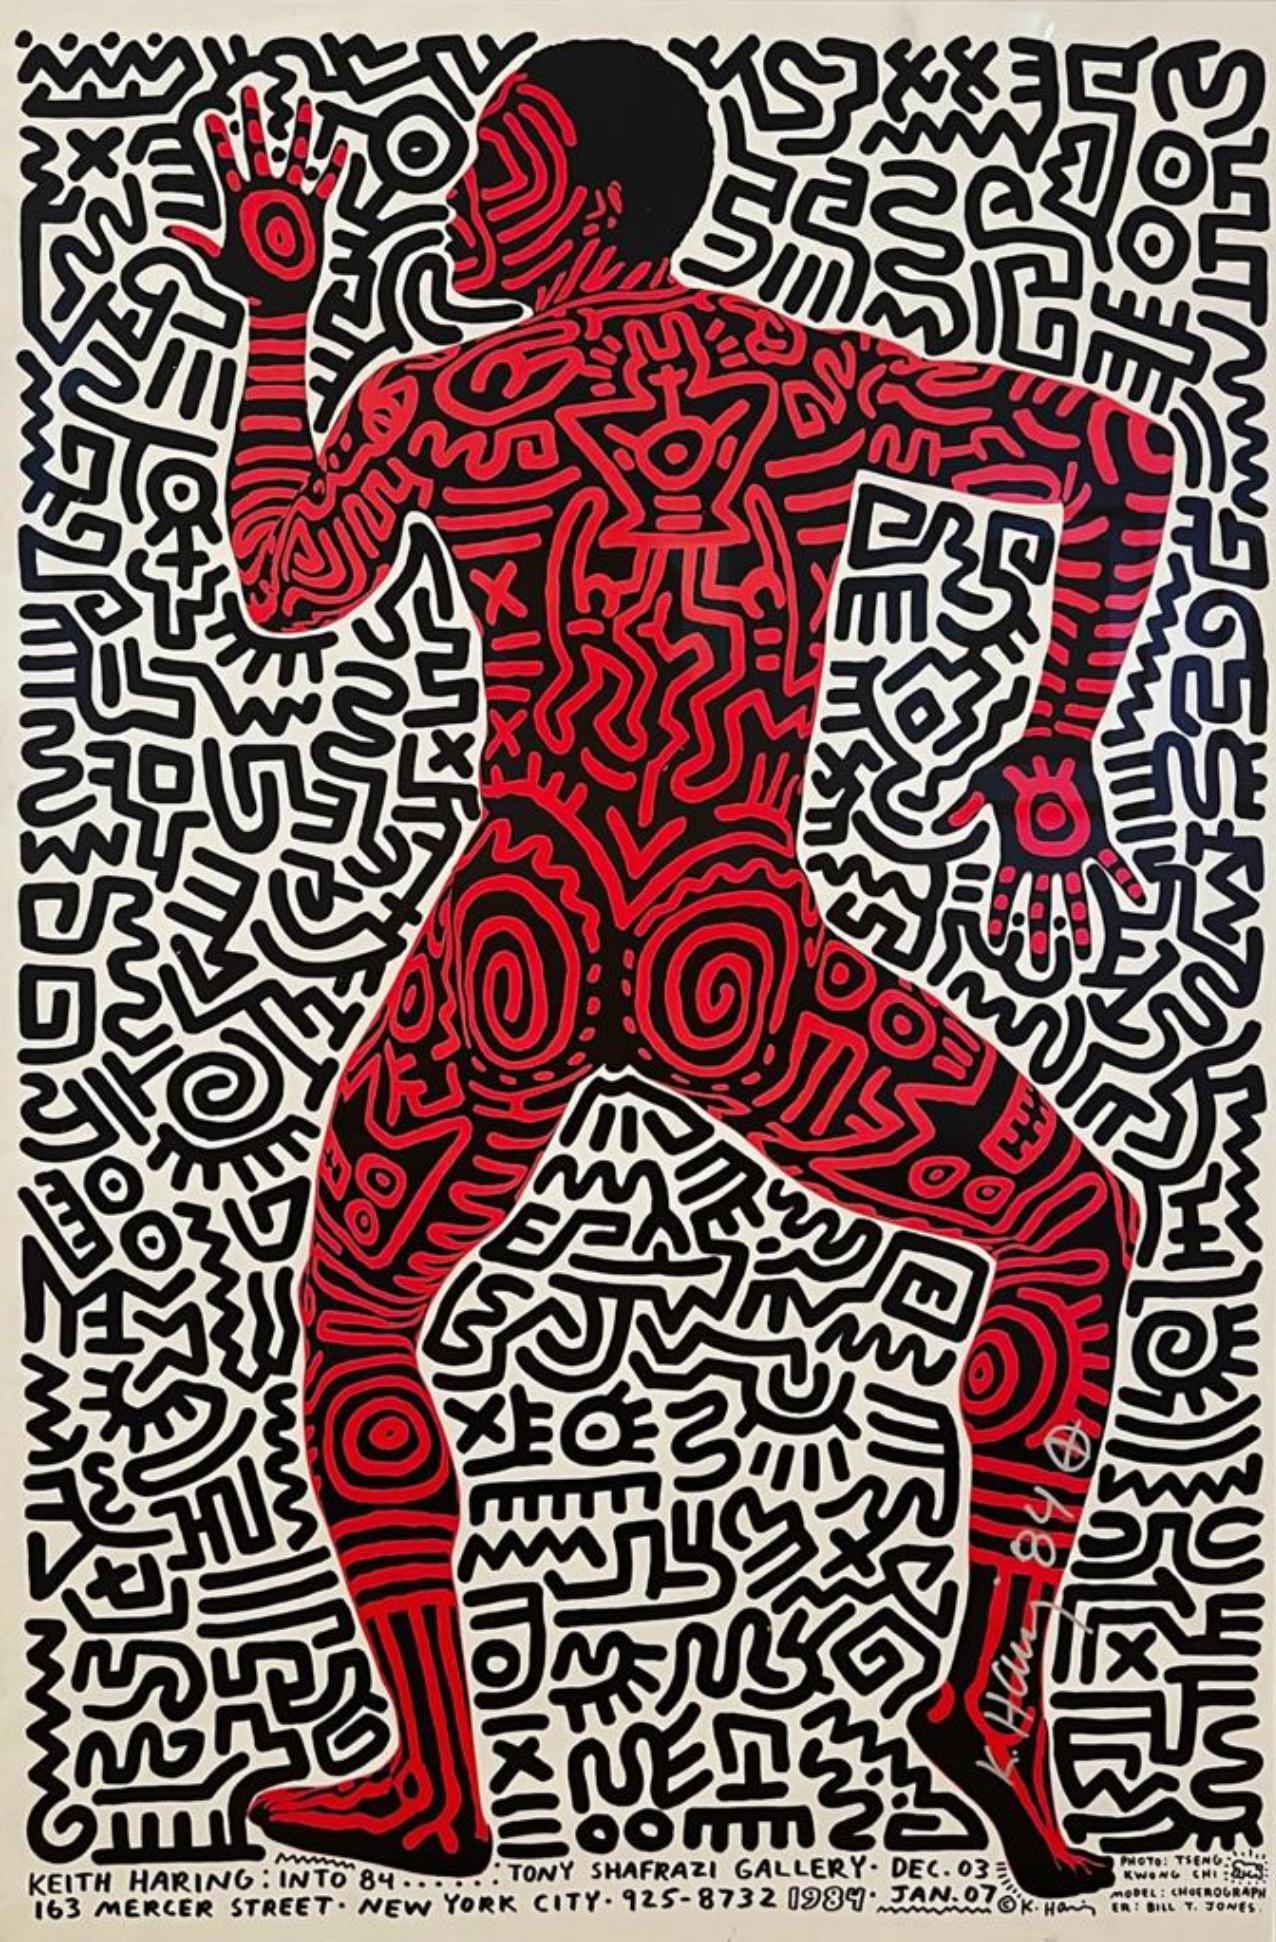 Into 84 - Impression de Keith Haring, signature rare 1